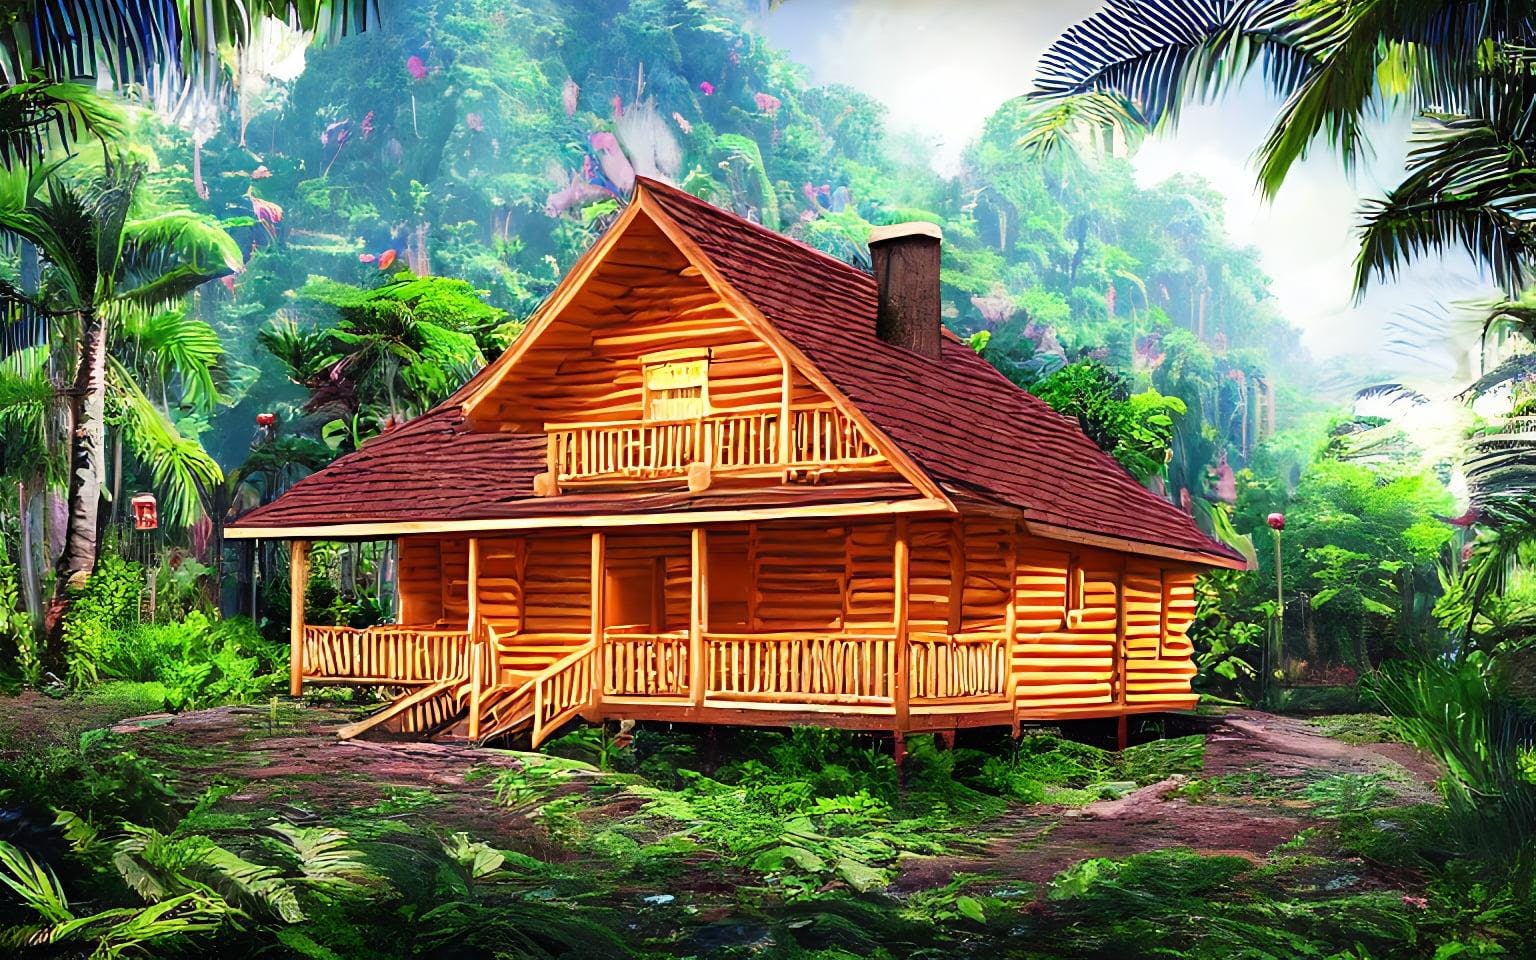 Golden log cabin in a vaporwave jungle